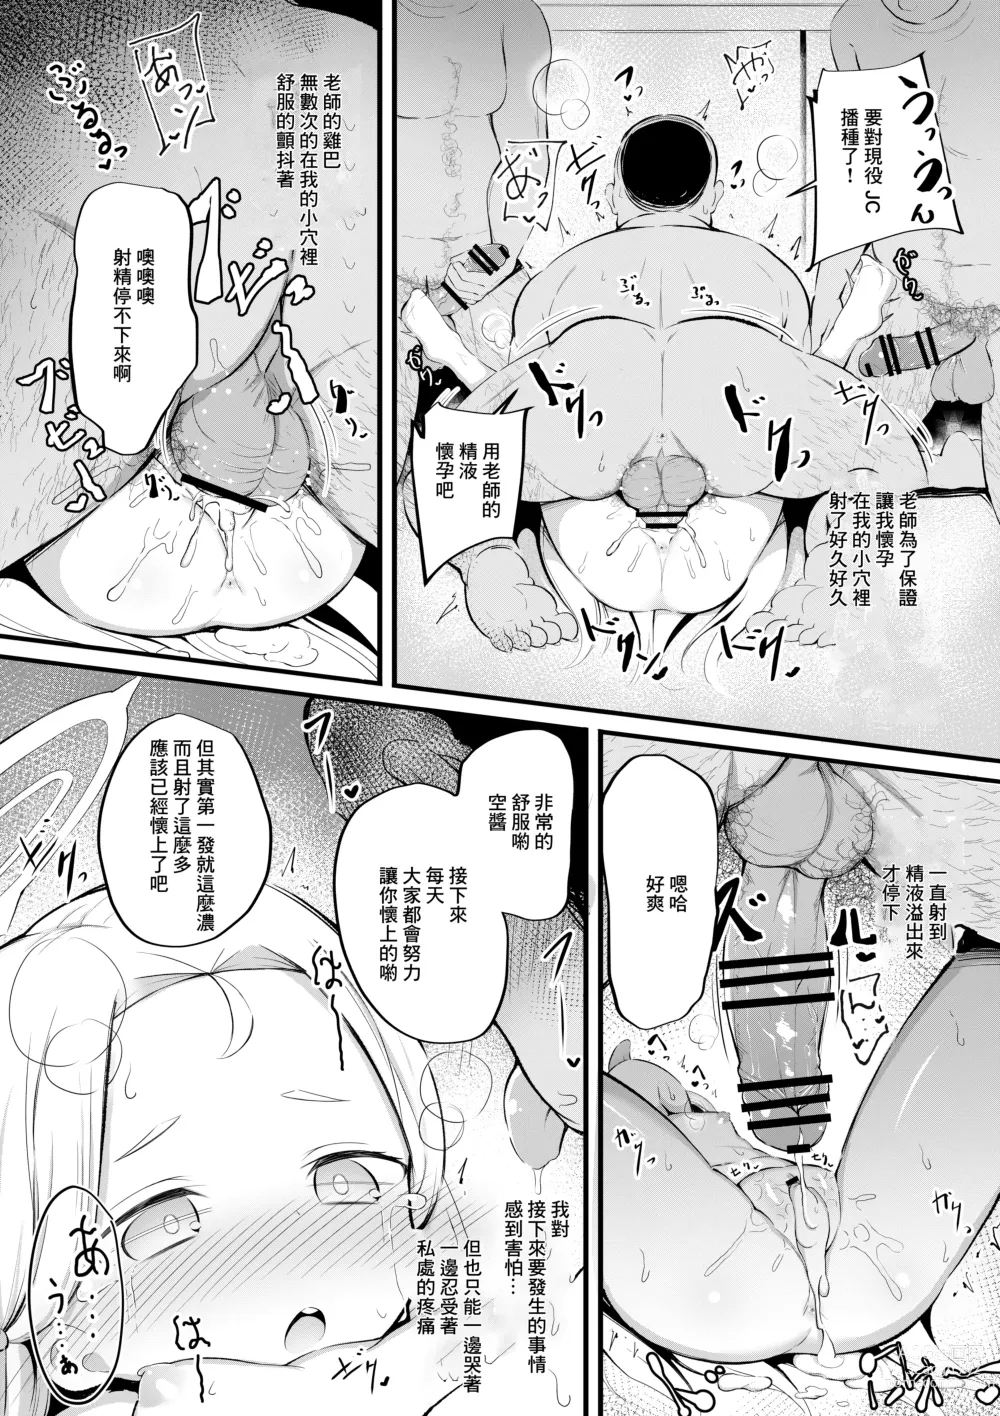 Page 9 of doujinshi Sora no Himitsu no Arbeit